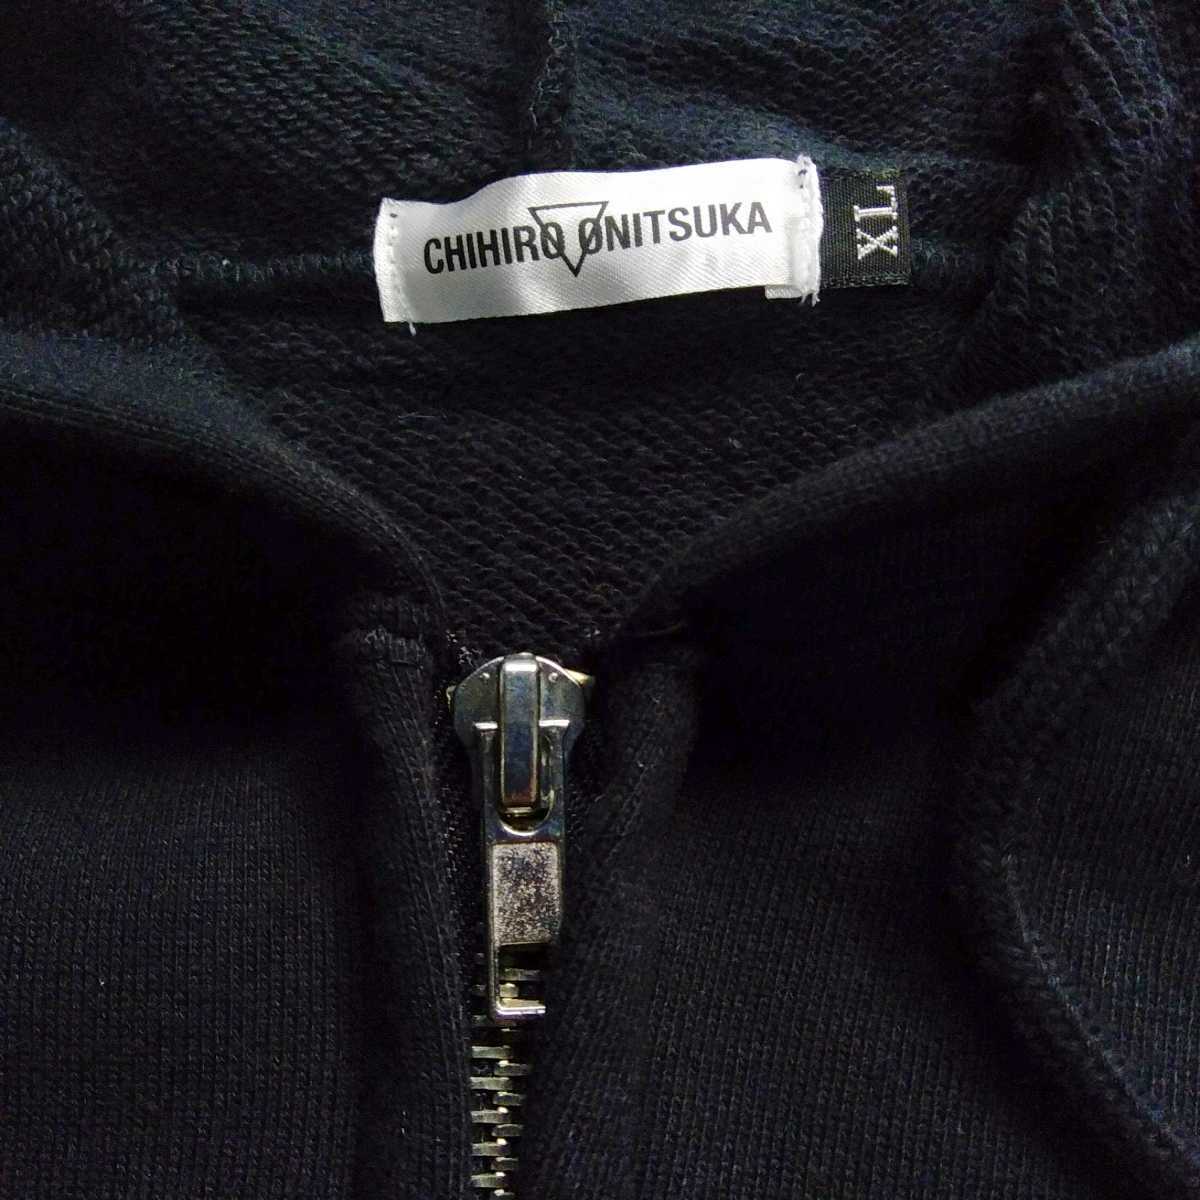  новый товар Onitsuka Chihiro 2011 год Live Tour Parker чёрный Tour товары Live футболка 